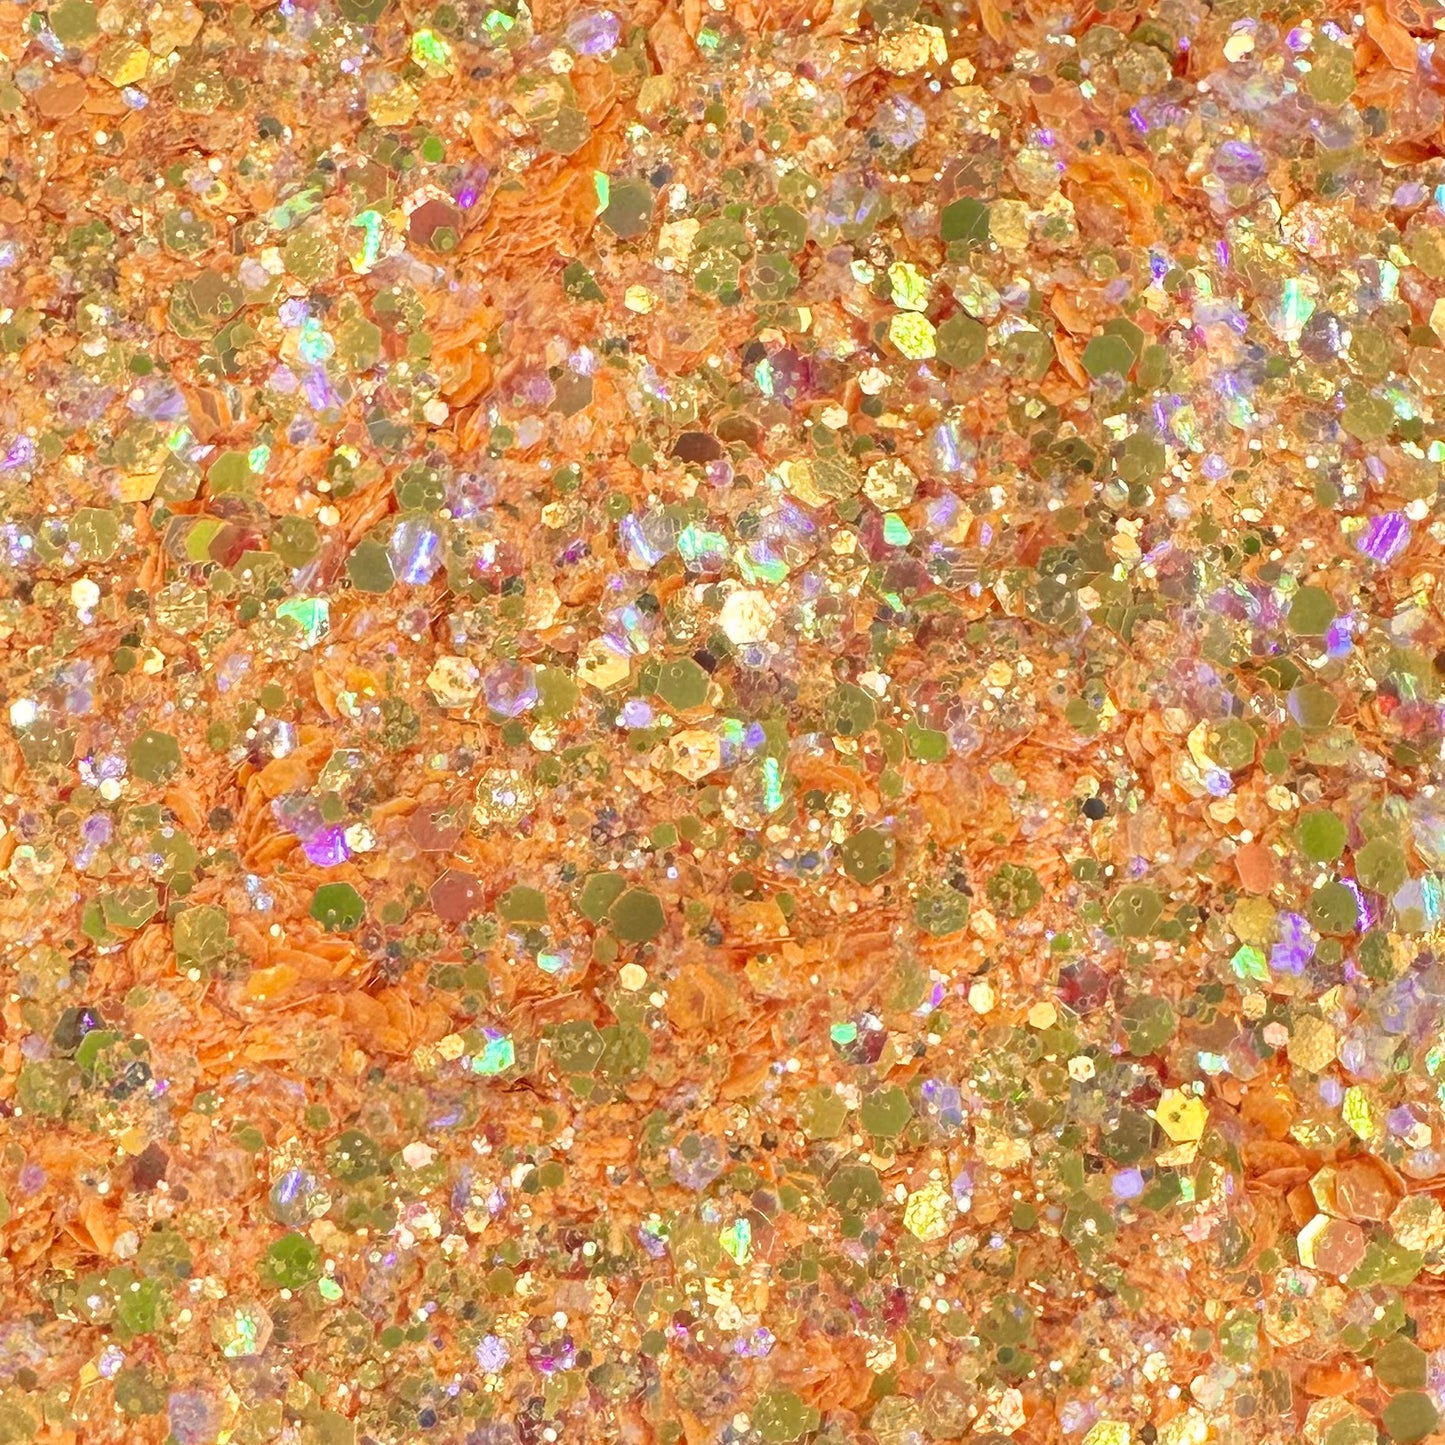 Bulk Glitter A-M